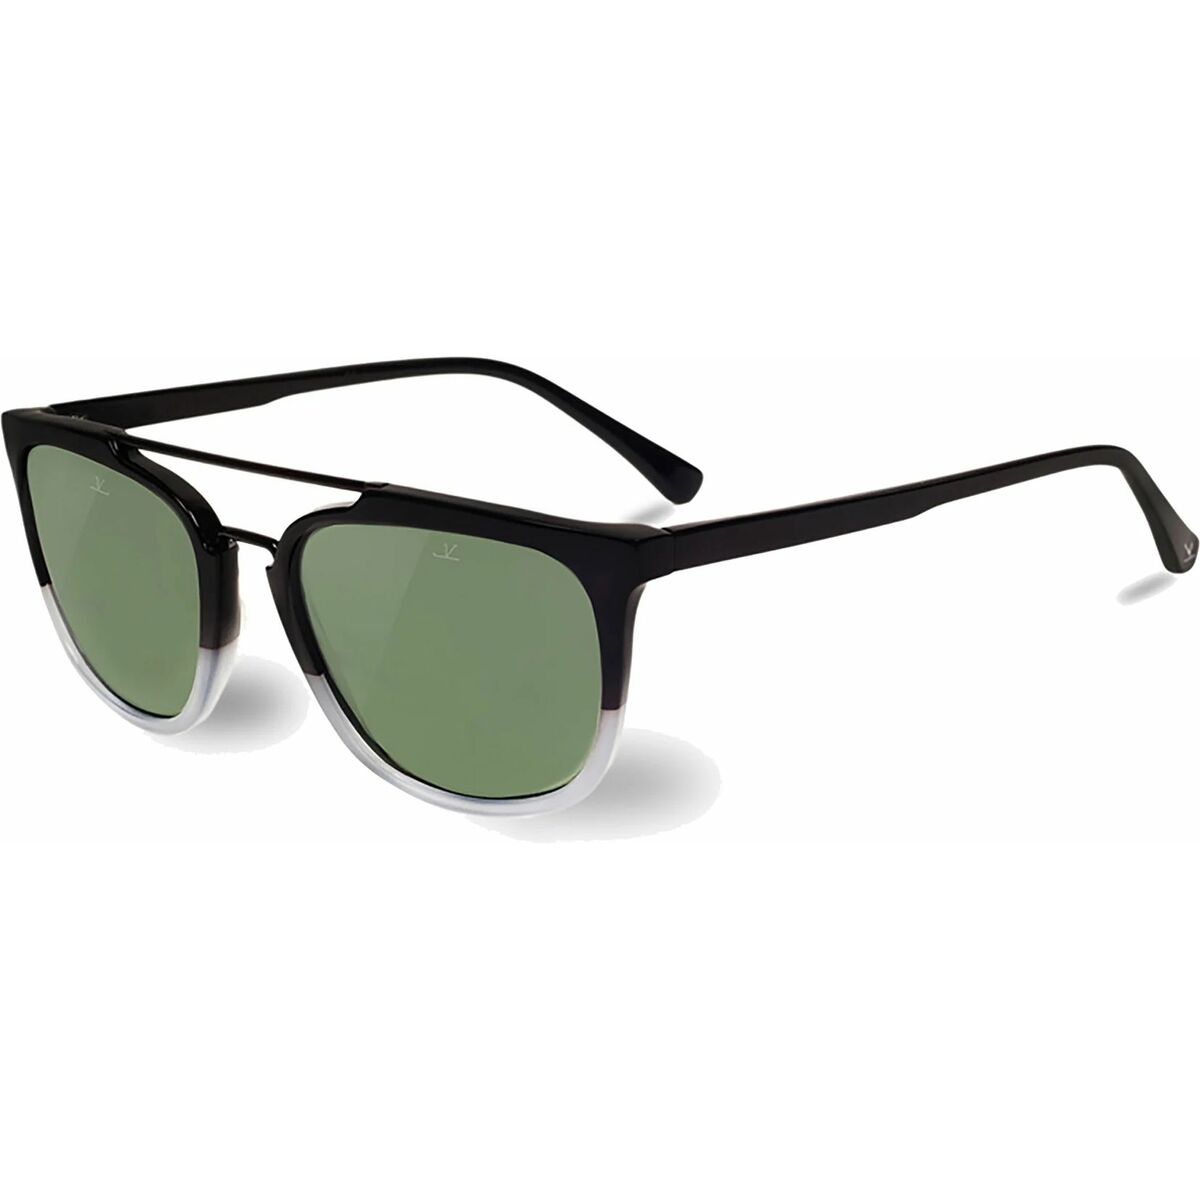 Vuarnet Unisex Sunglasses  Vl160400021121  56 Mm Gbby2 In Green